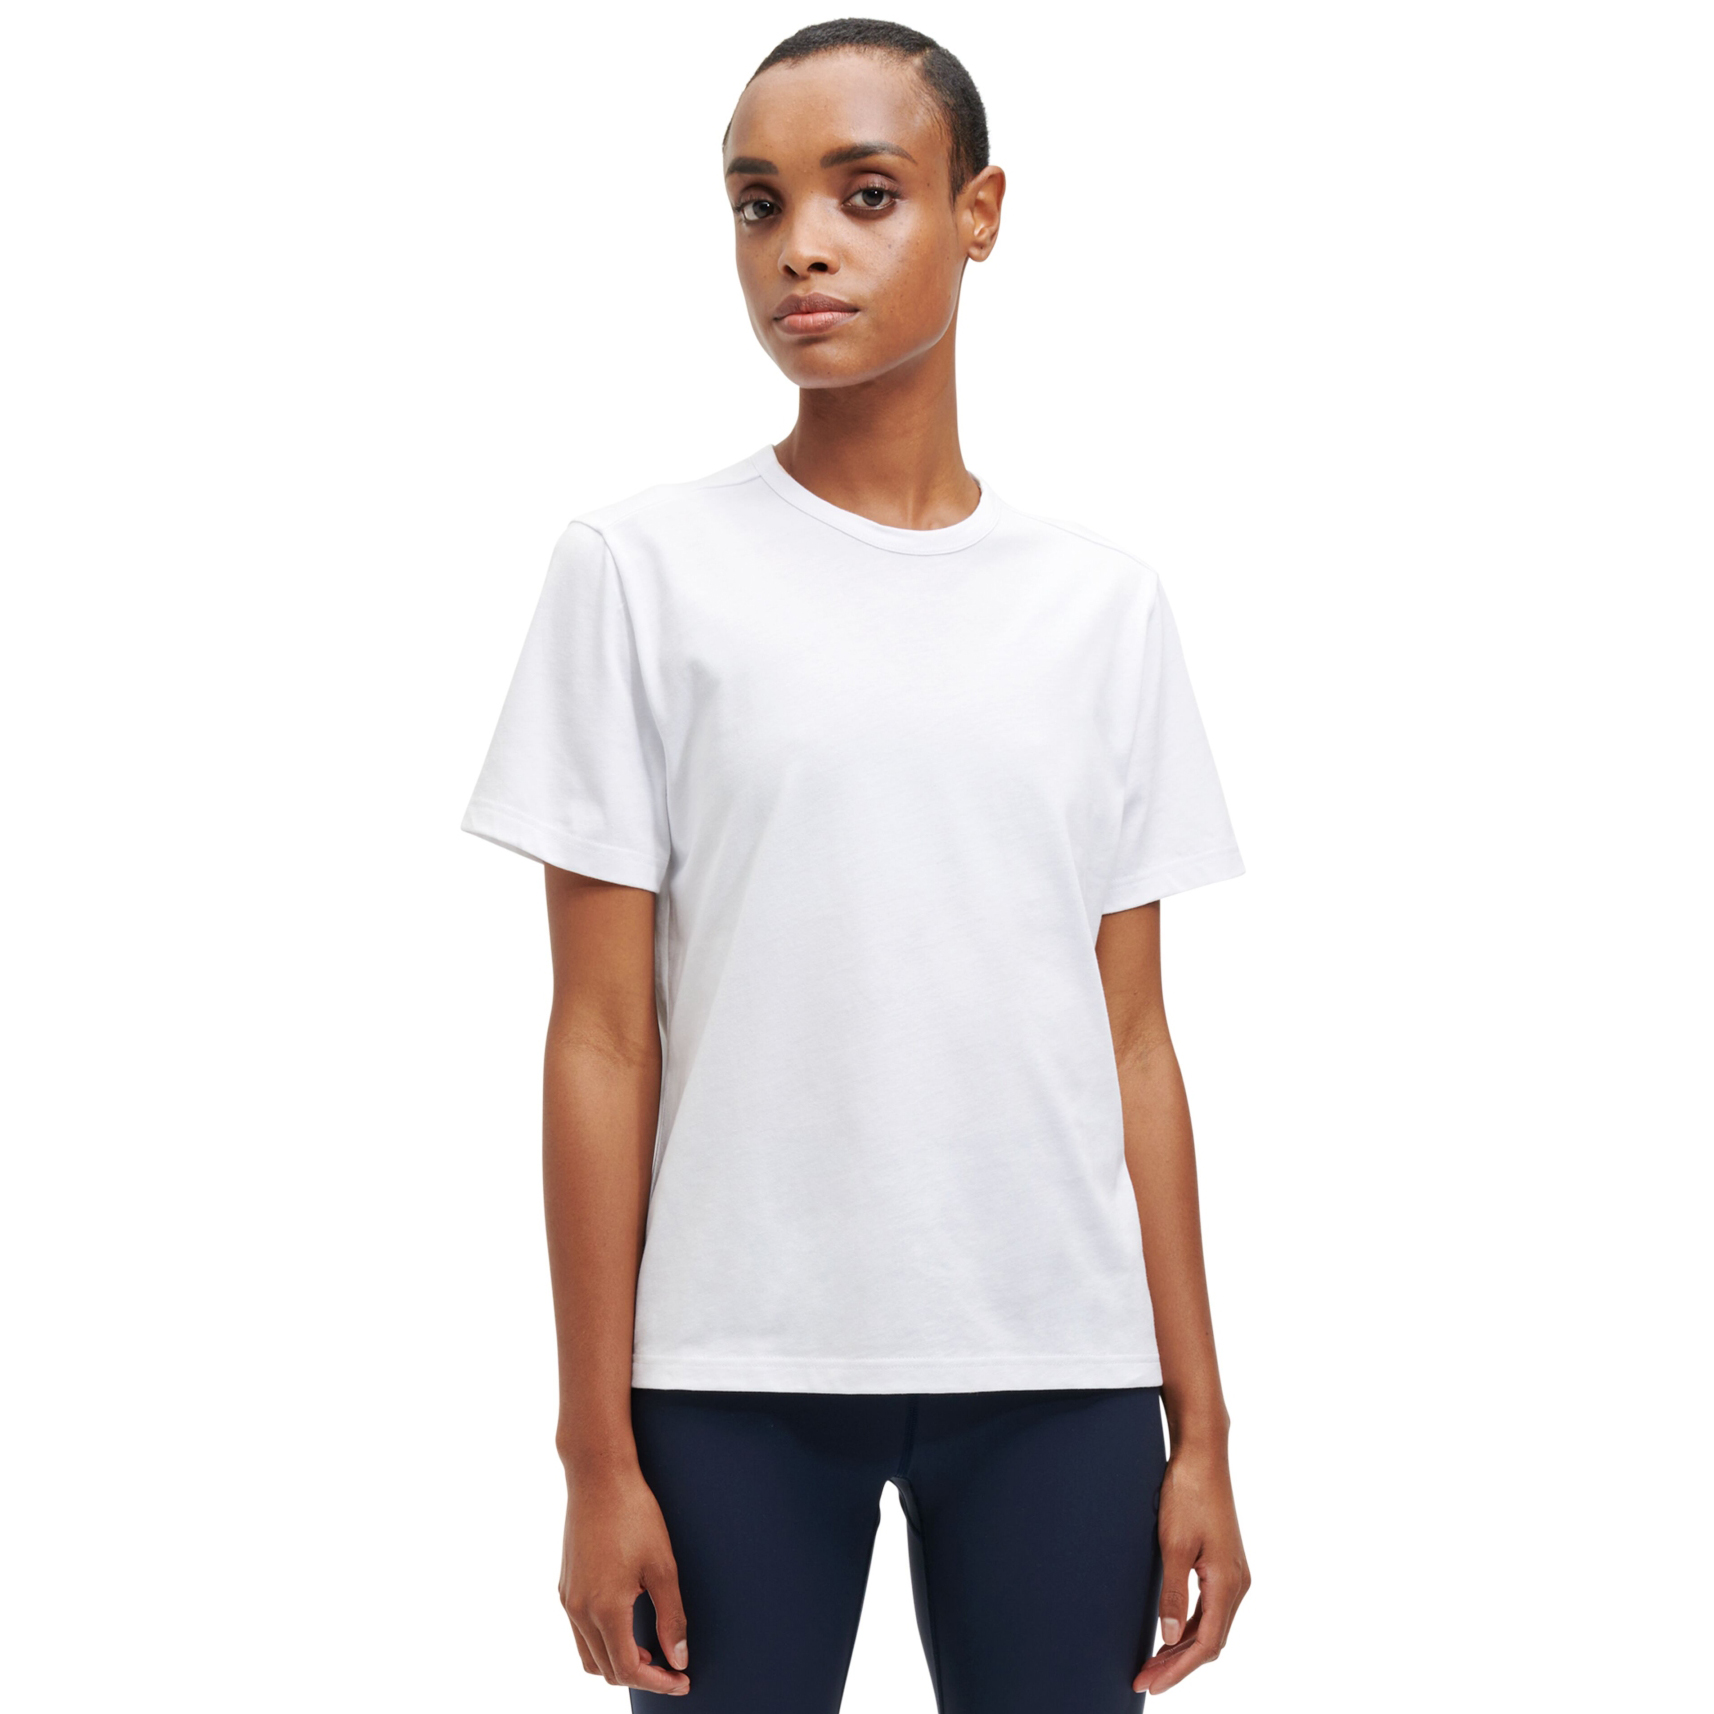 Produktbild von On T Damen T-Shirt - Weiß